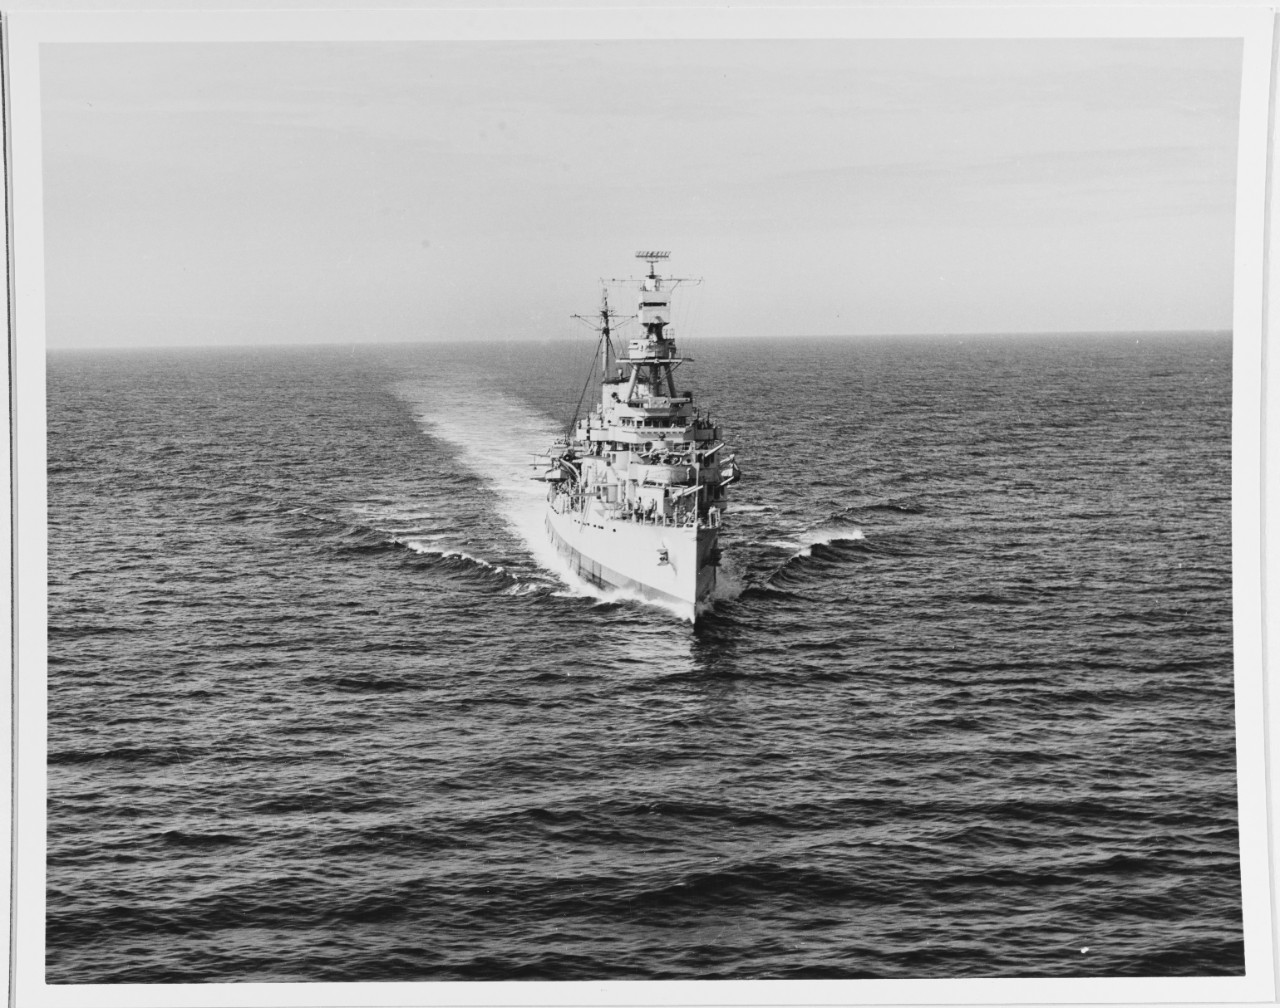 USS TRENTON (CL-11)